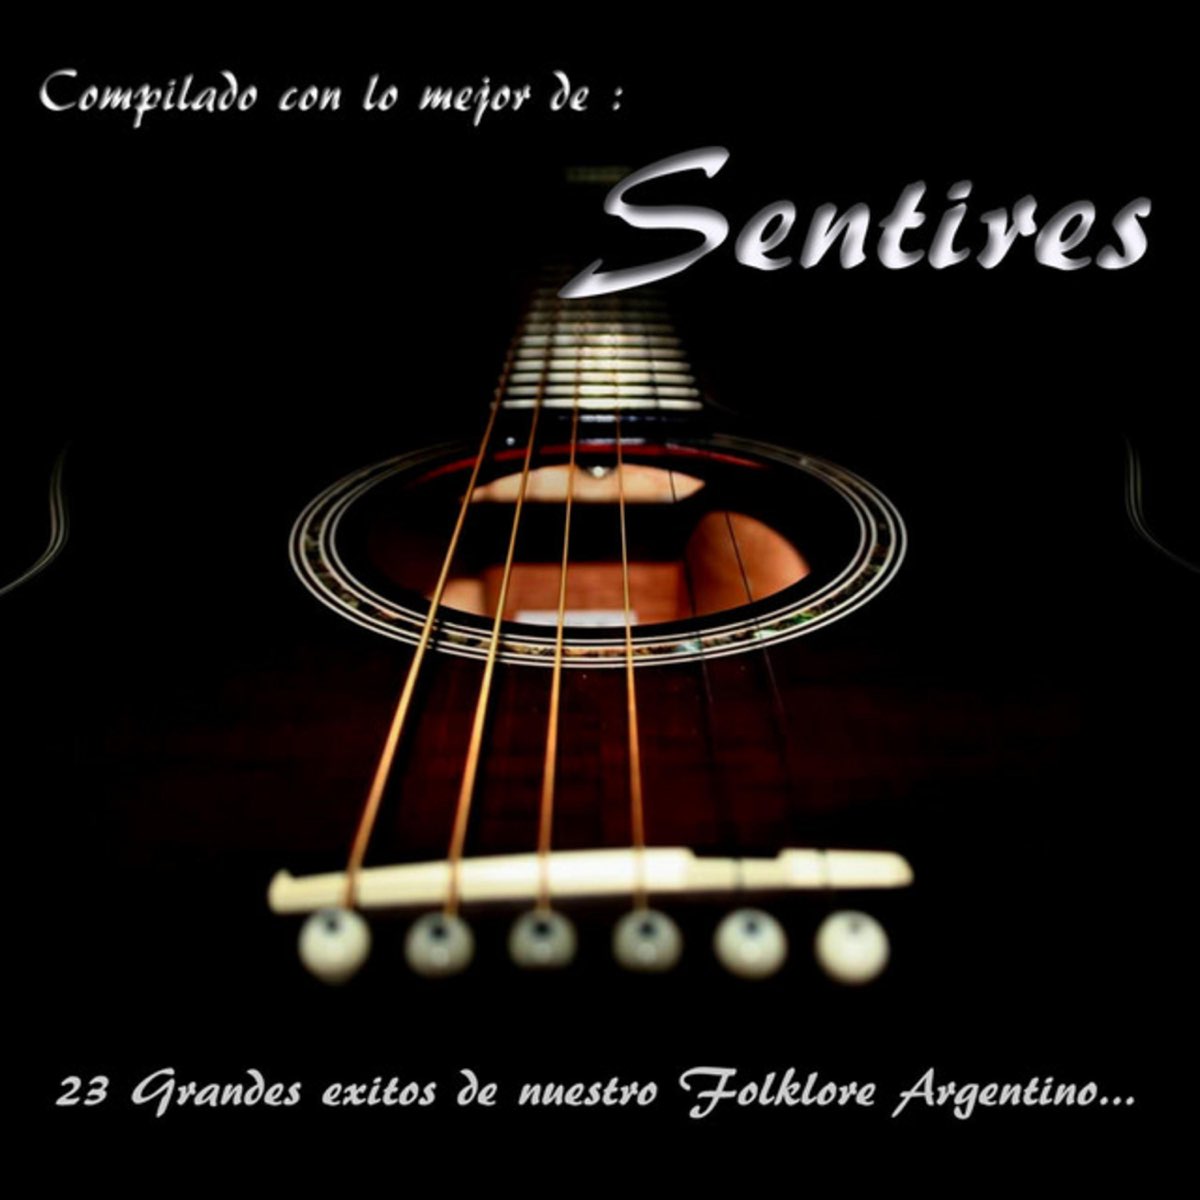 23 Grandes Éxitos de Nuestro Folklore Argentino by Sentires on Apple Music